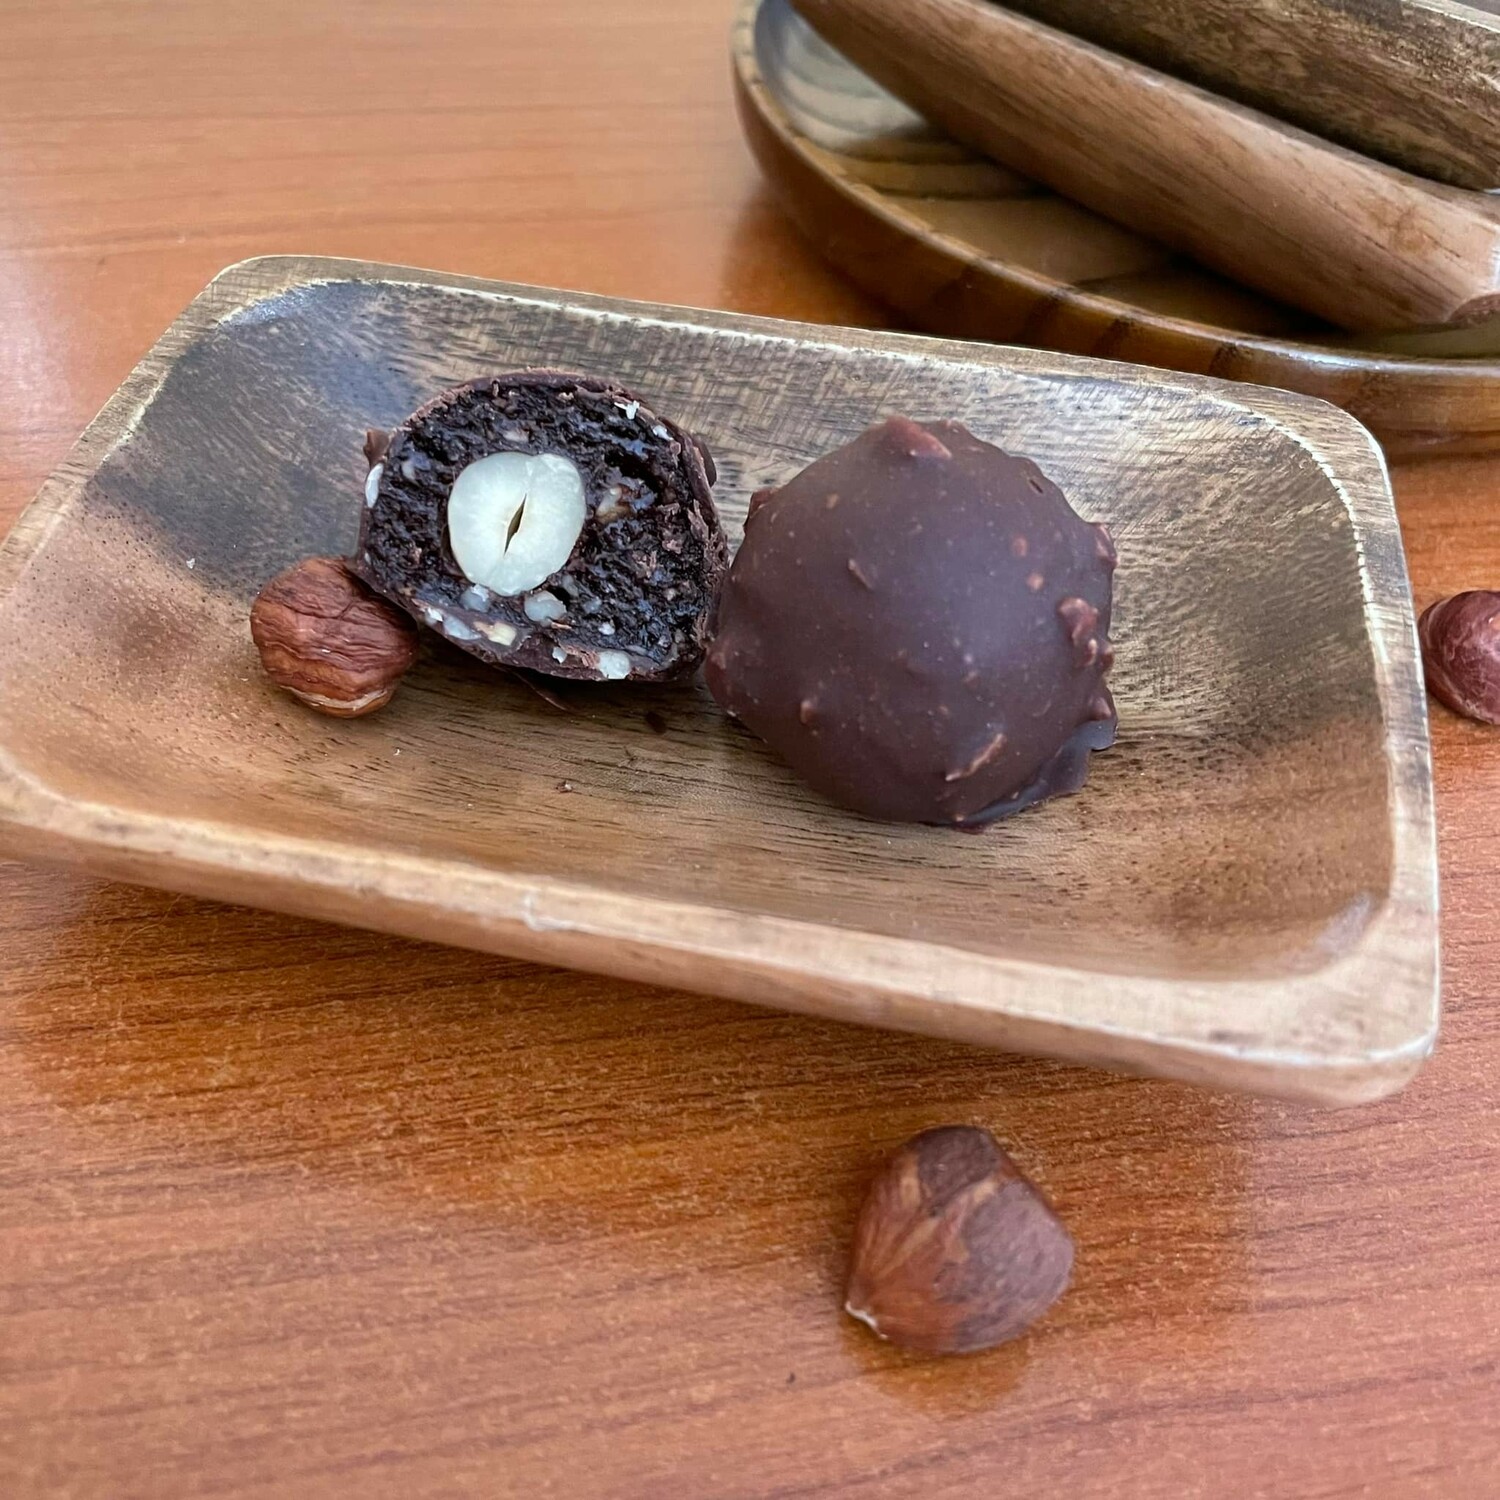 פרלינים אגוזי לוז בשוקולד